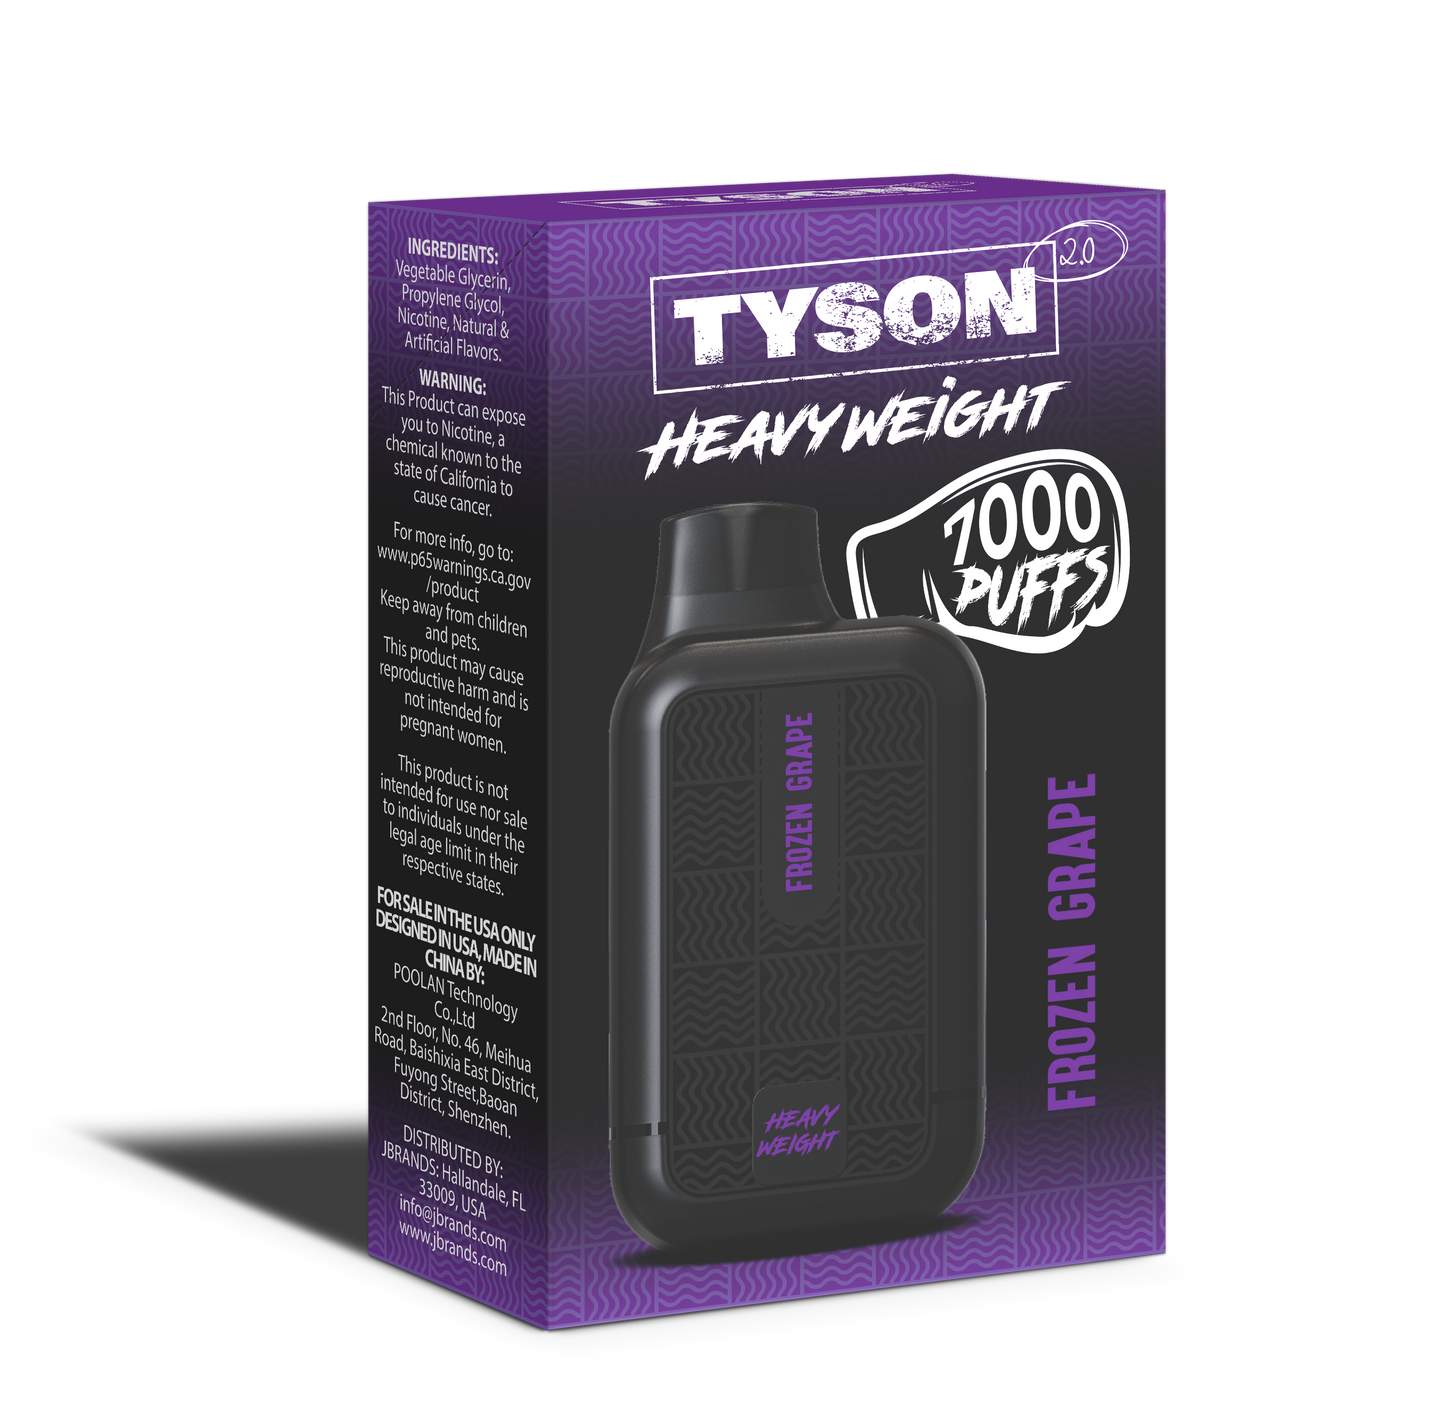 Tyson 2.0 Heavyweight 7000 Puffs Disposable Vape - Frozen Grape